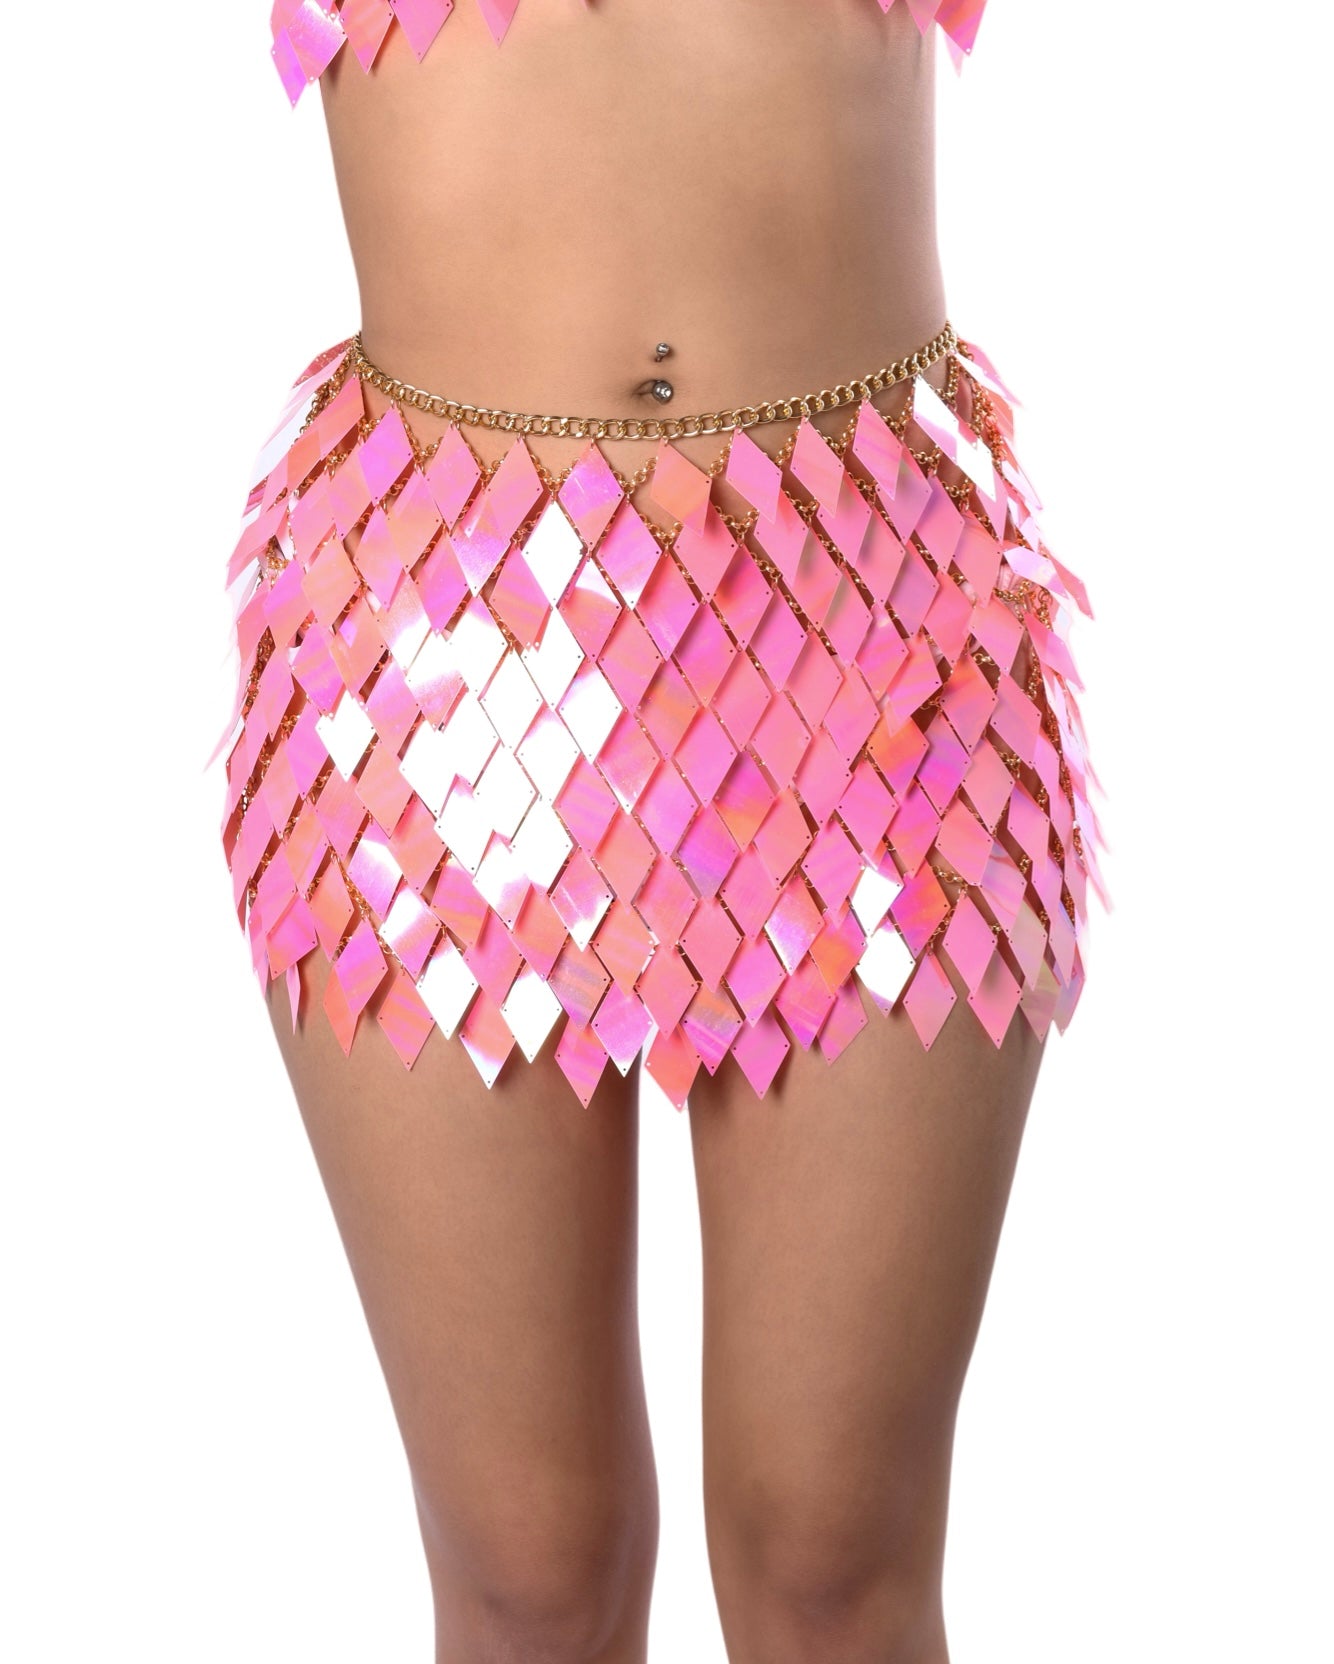 Flamingo Body Jewelry Skirt